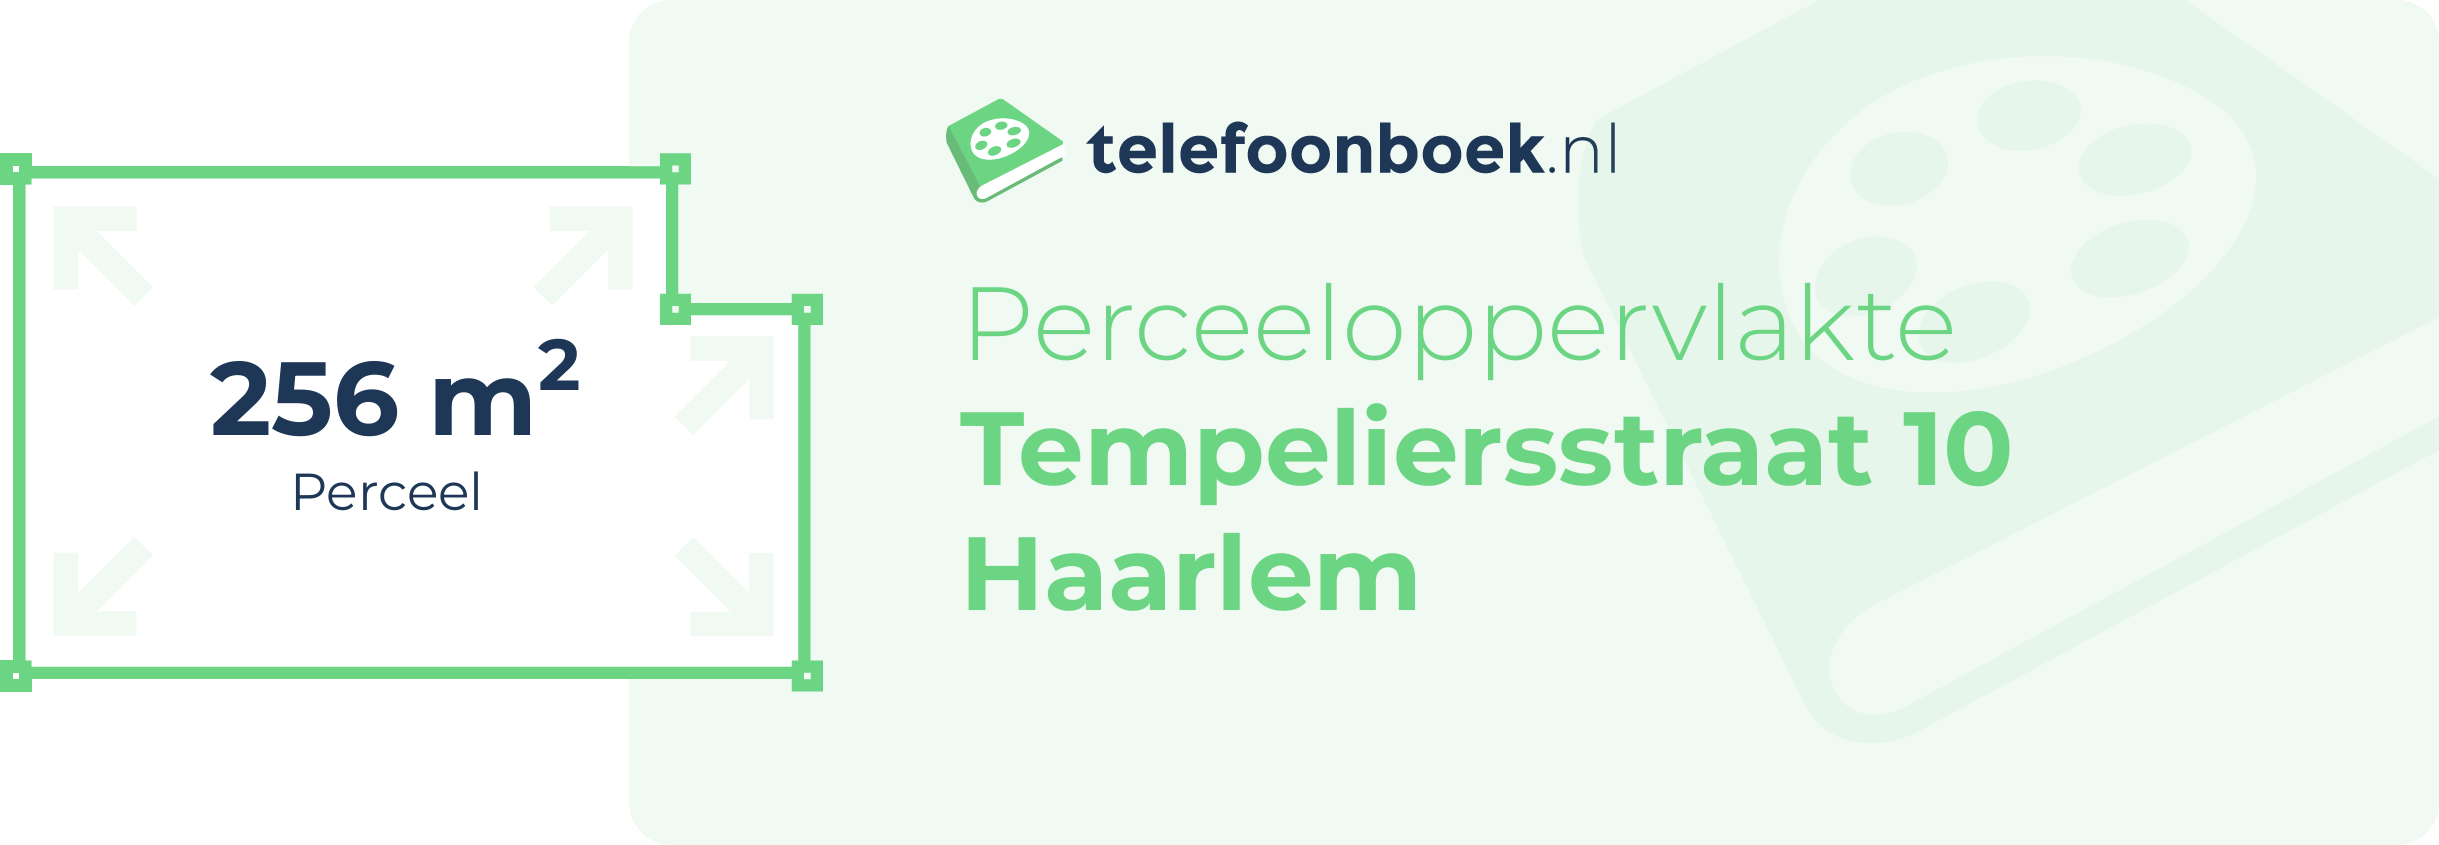 Perceeloppervlakte Tempeliersstraat 10 Haarlem